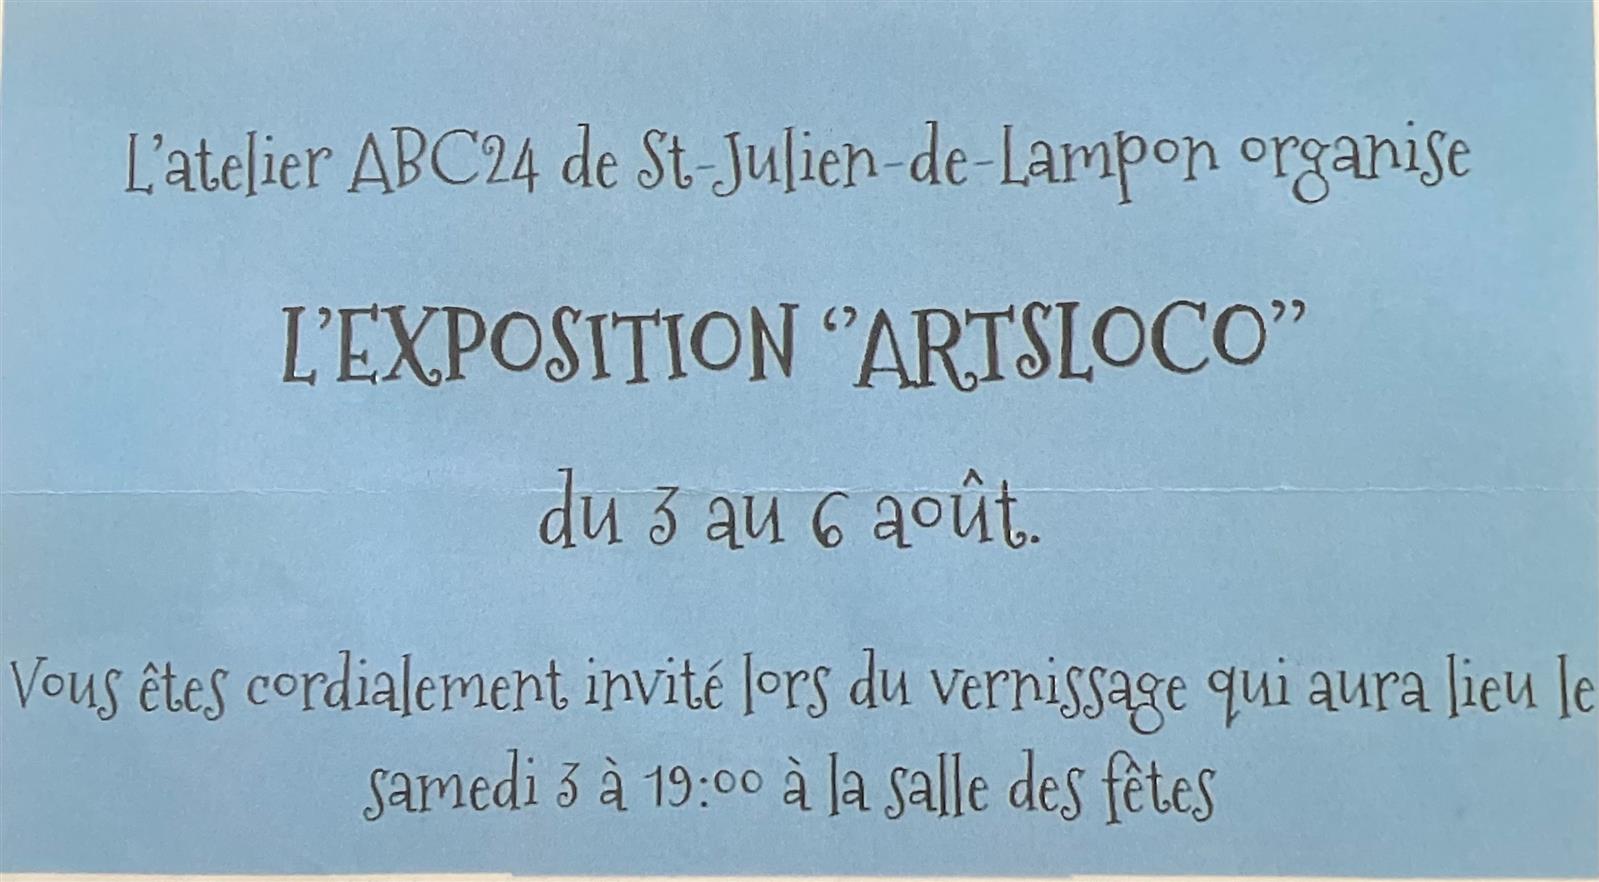 Exposition "ARTSLOCO"